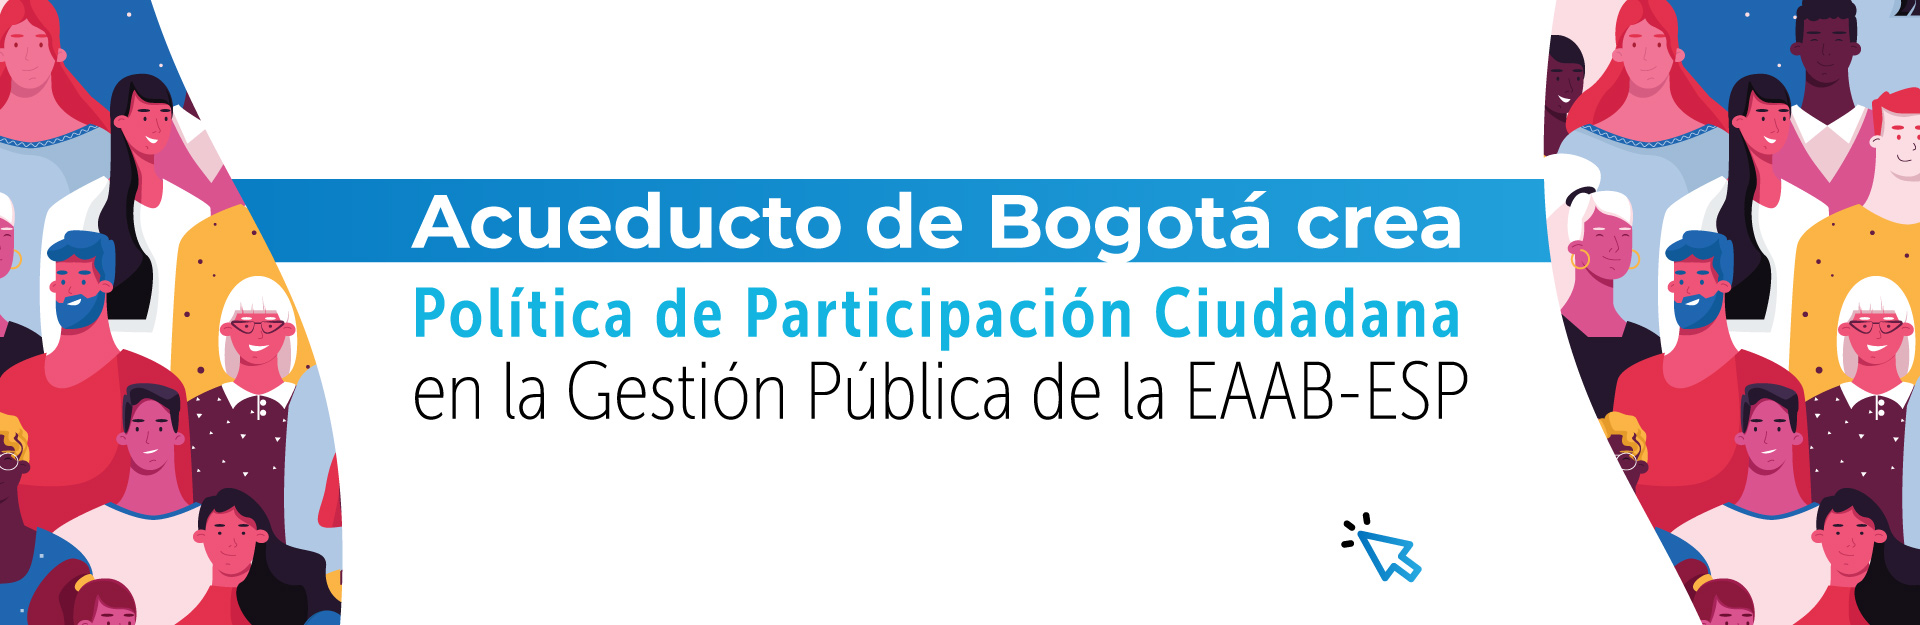 Acueducto de Bogotá crea Política de Participación Ciudadana en la Gestión Pública de la EAAB-ESP